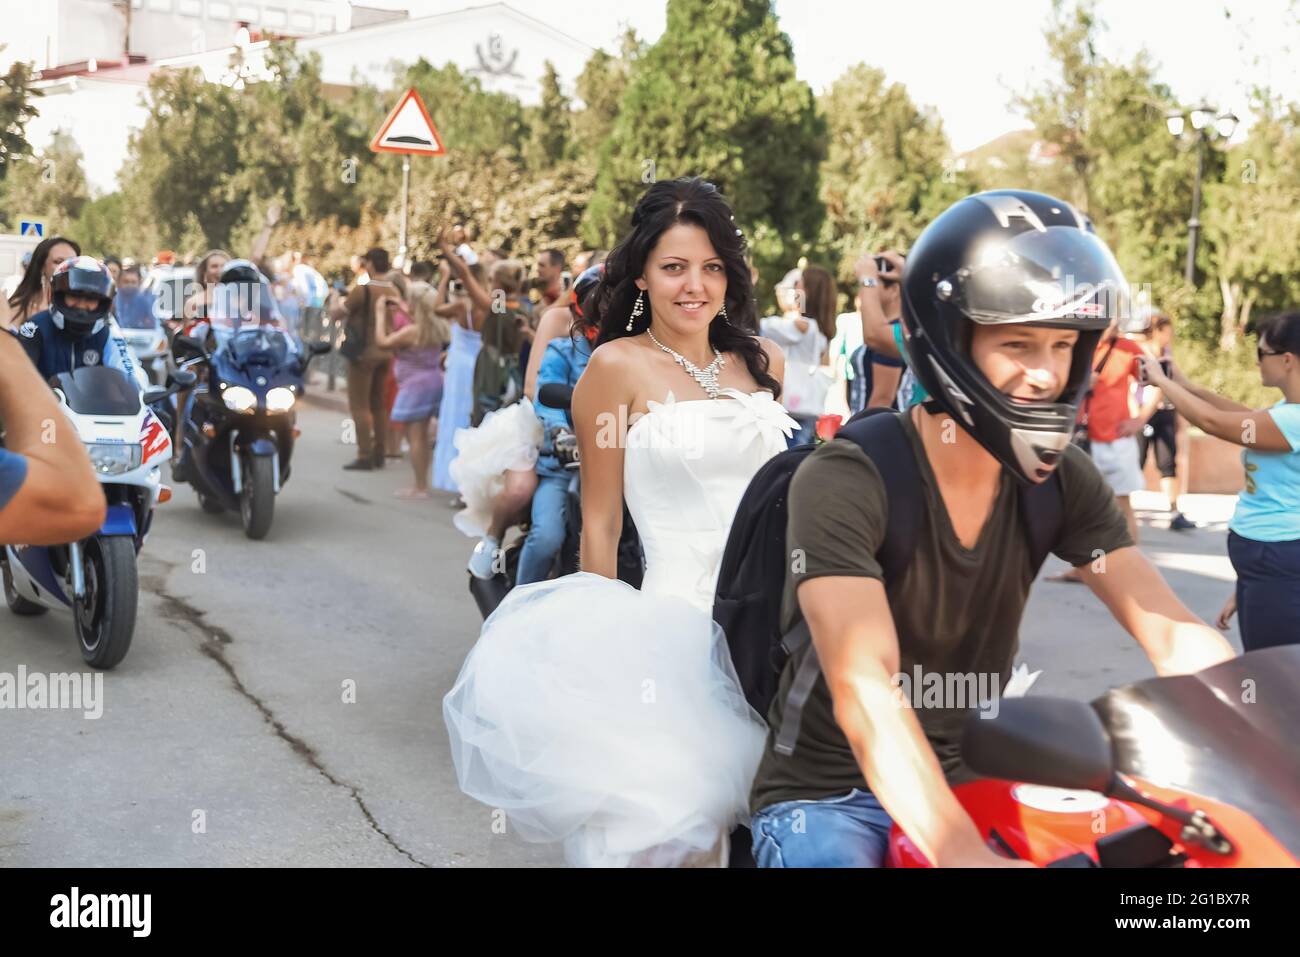 Kerch Russia - 9 settembre 2019 - festa delle spose, una vacanza di tutte le spose e abiti da sposa. Tutte le spose della regione sono andate in moto Foto Stock